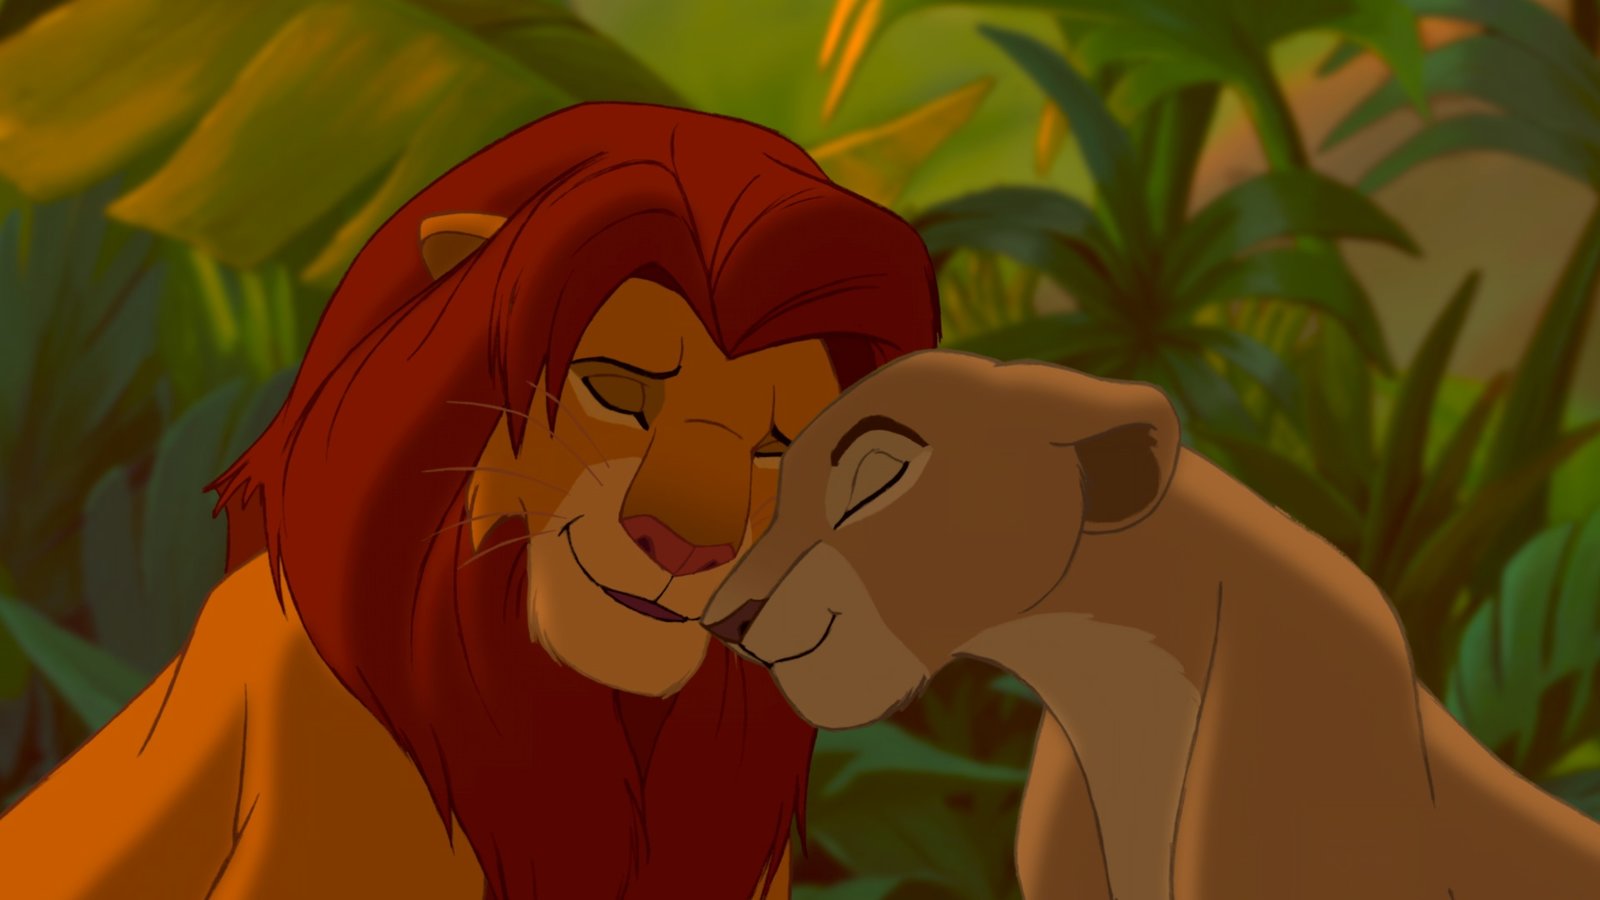 König der Löwen, Der - Disney Classics